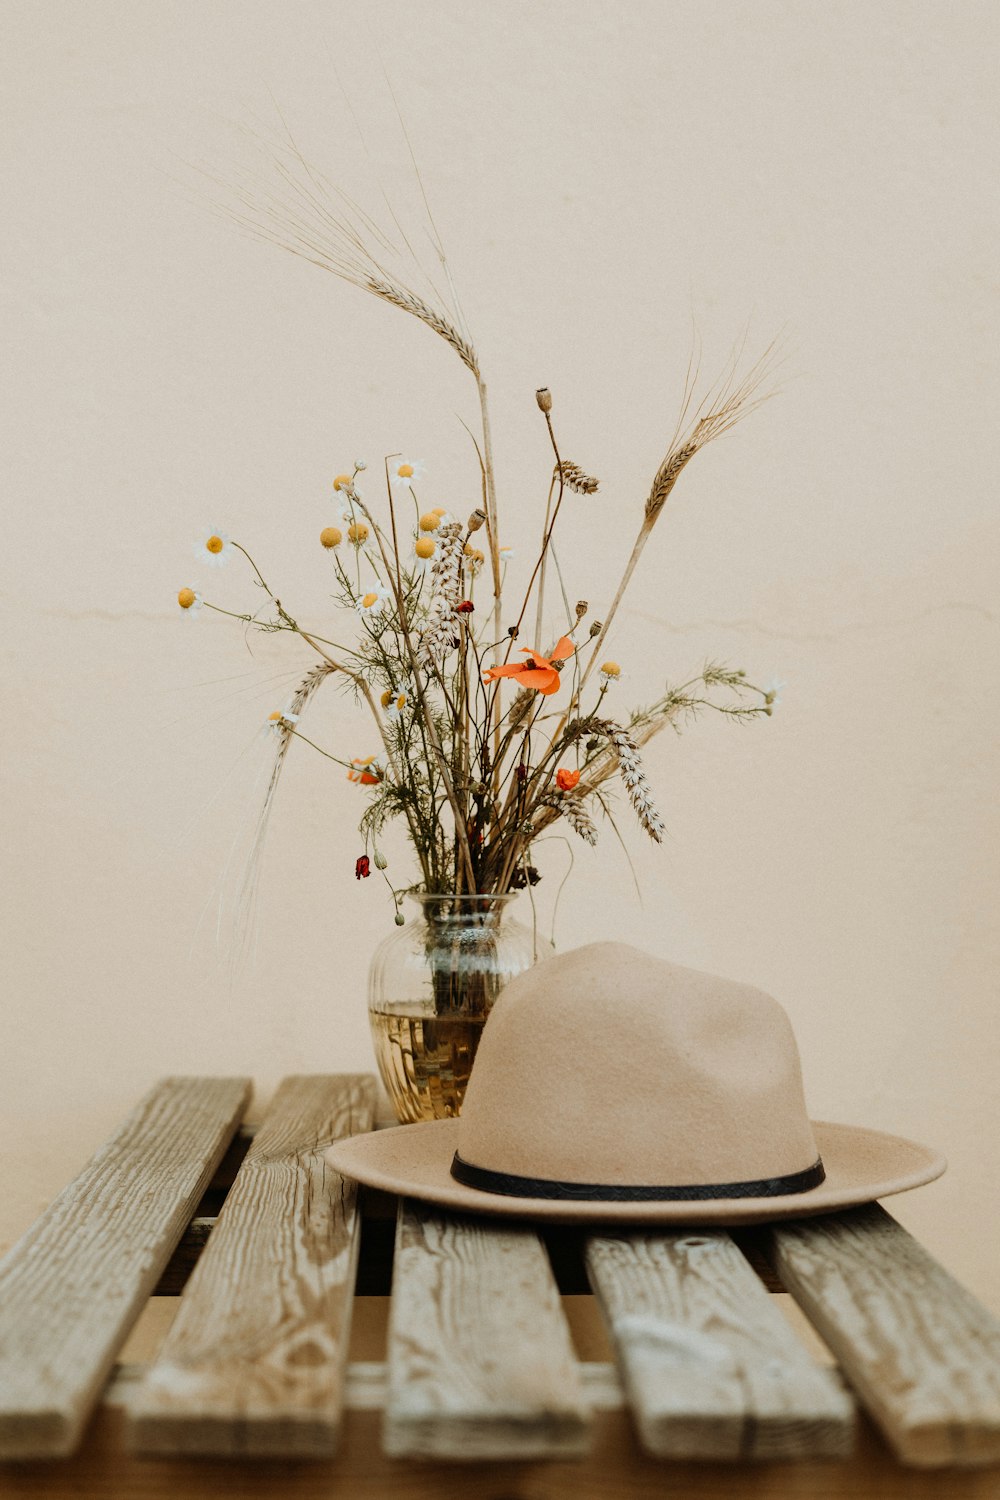 chapéu marrom na mesa de madeira ao lado da flor no vaso